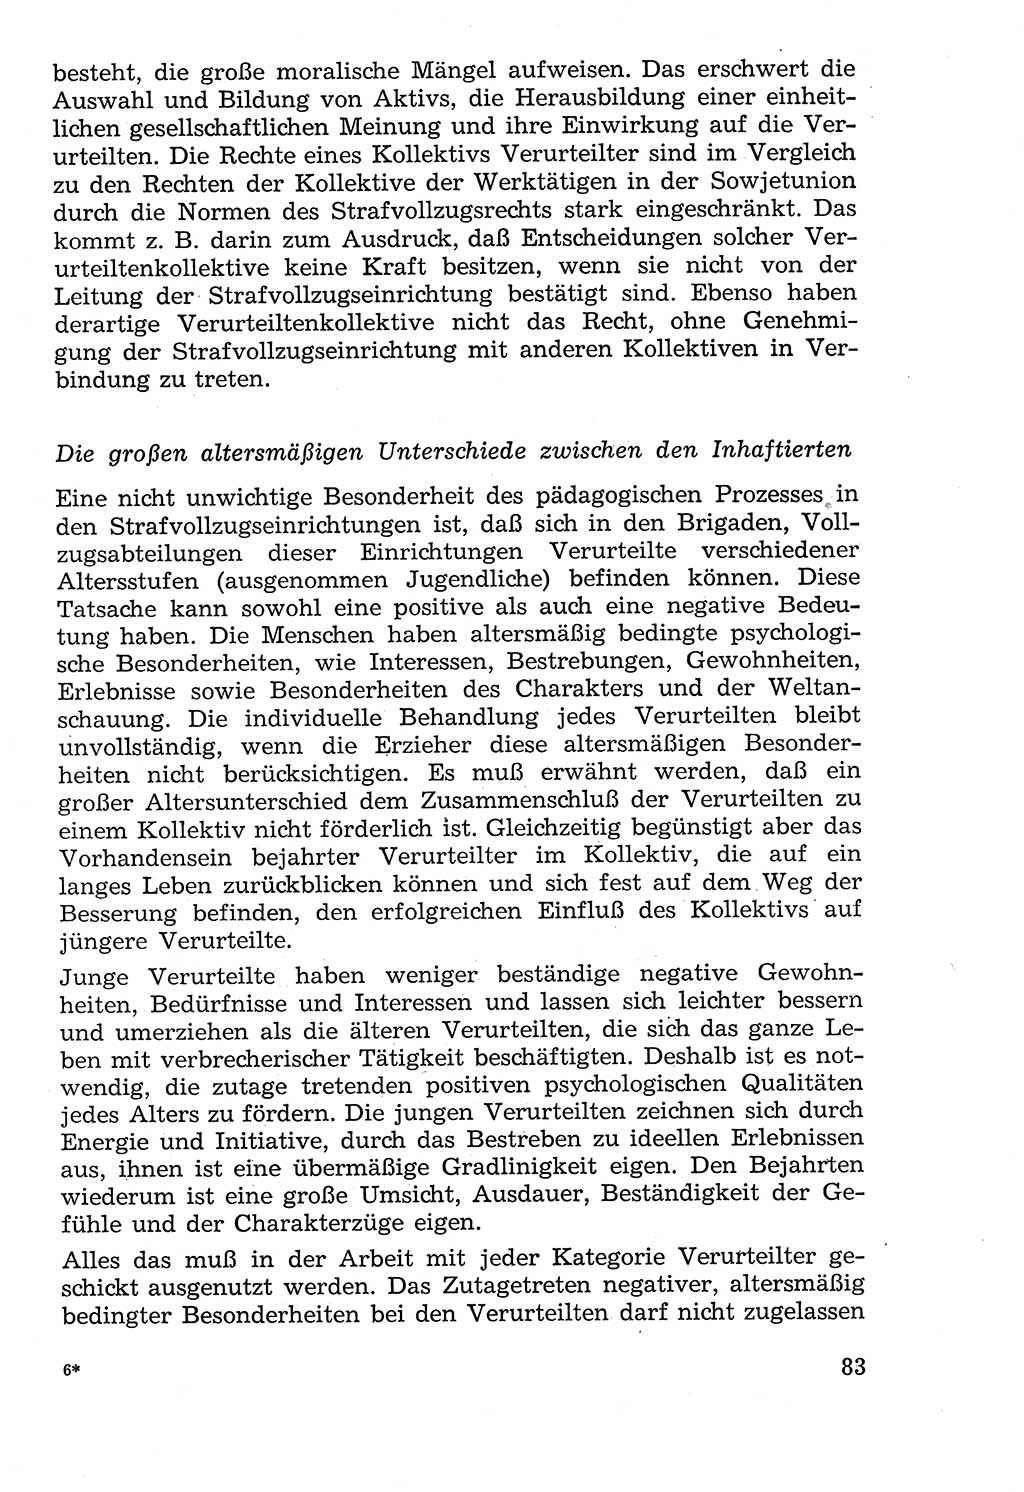 Lehrbuch der Strafvollzugspädagogik [Deutsche Demokratische Republik (DDR)] 1969, Seite 83 (Lb. SV-Pd. DDR 1969, S. 83)